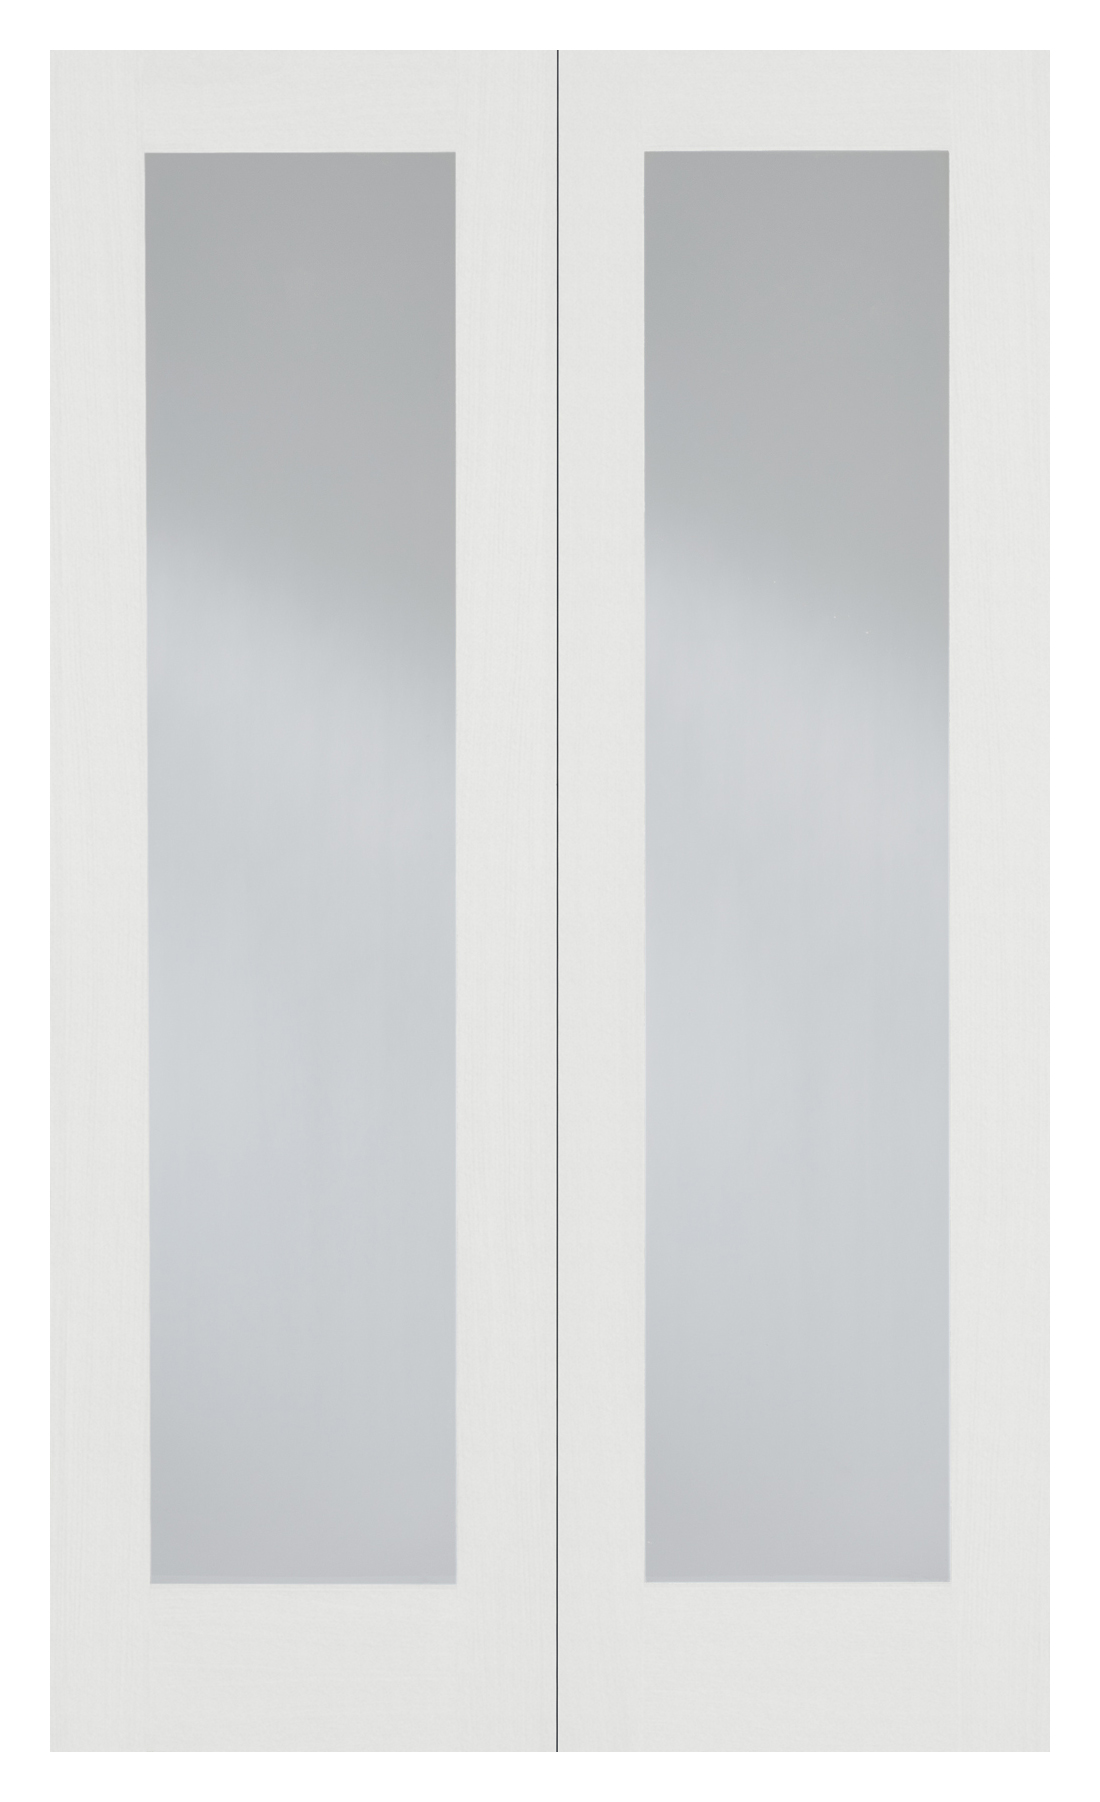 LPD Internal Pattern 20 Clear Glazed Primed White Door - 1981mm